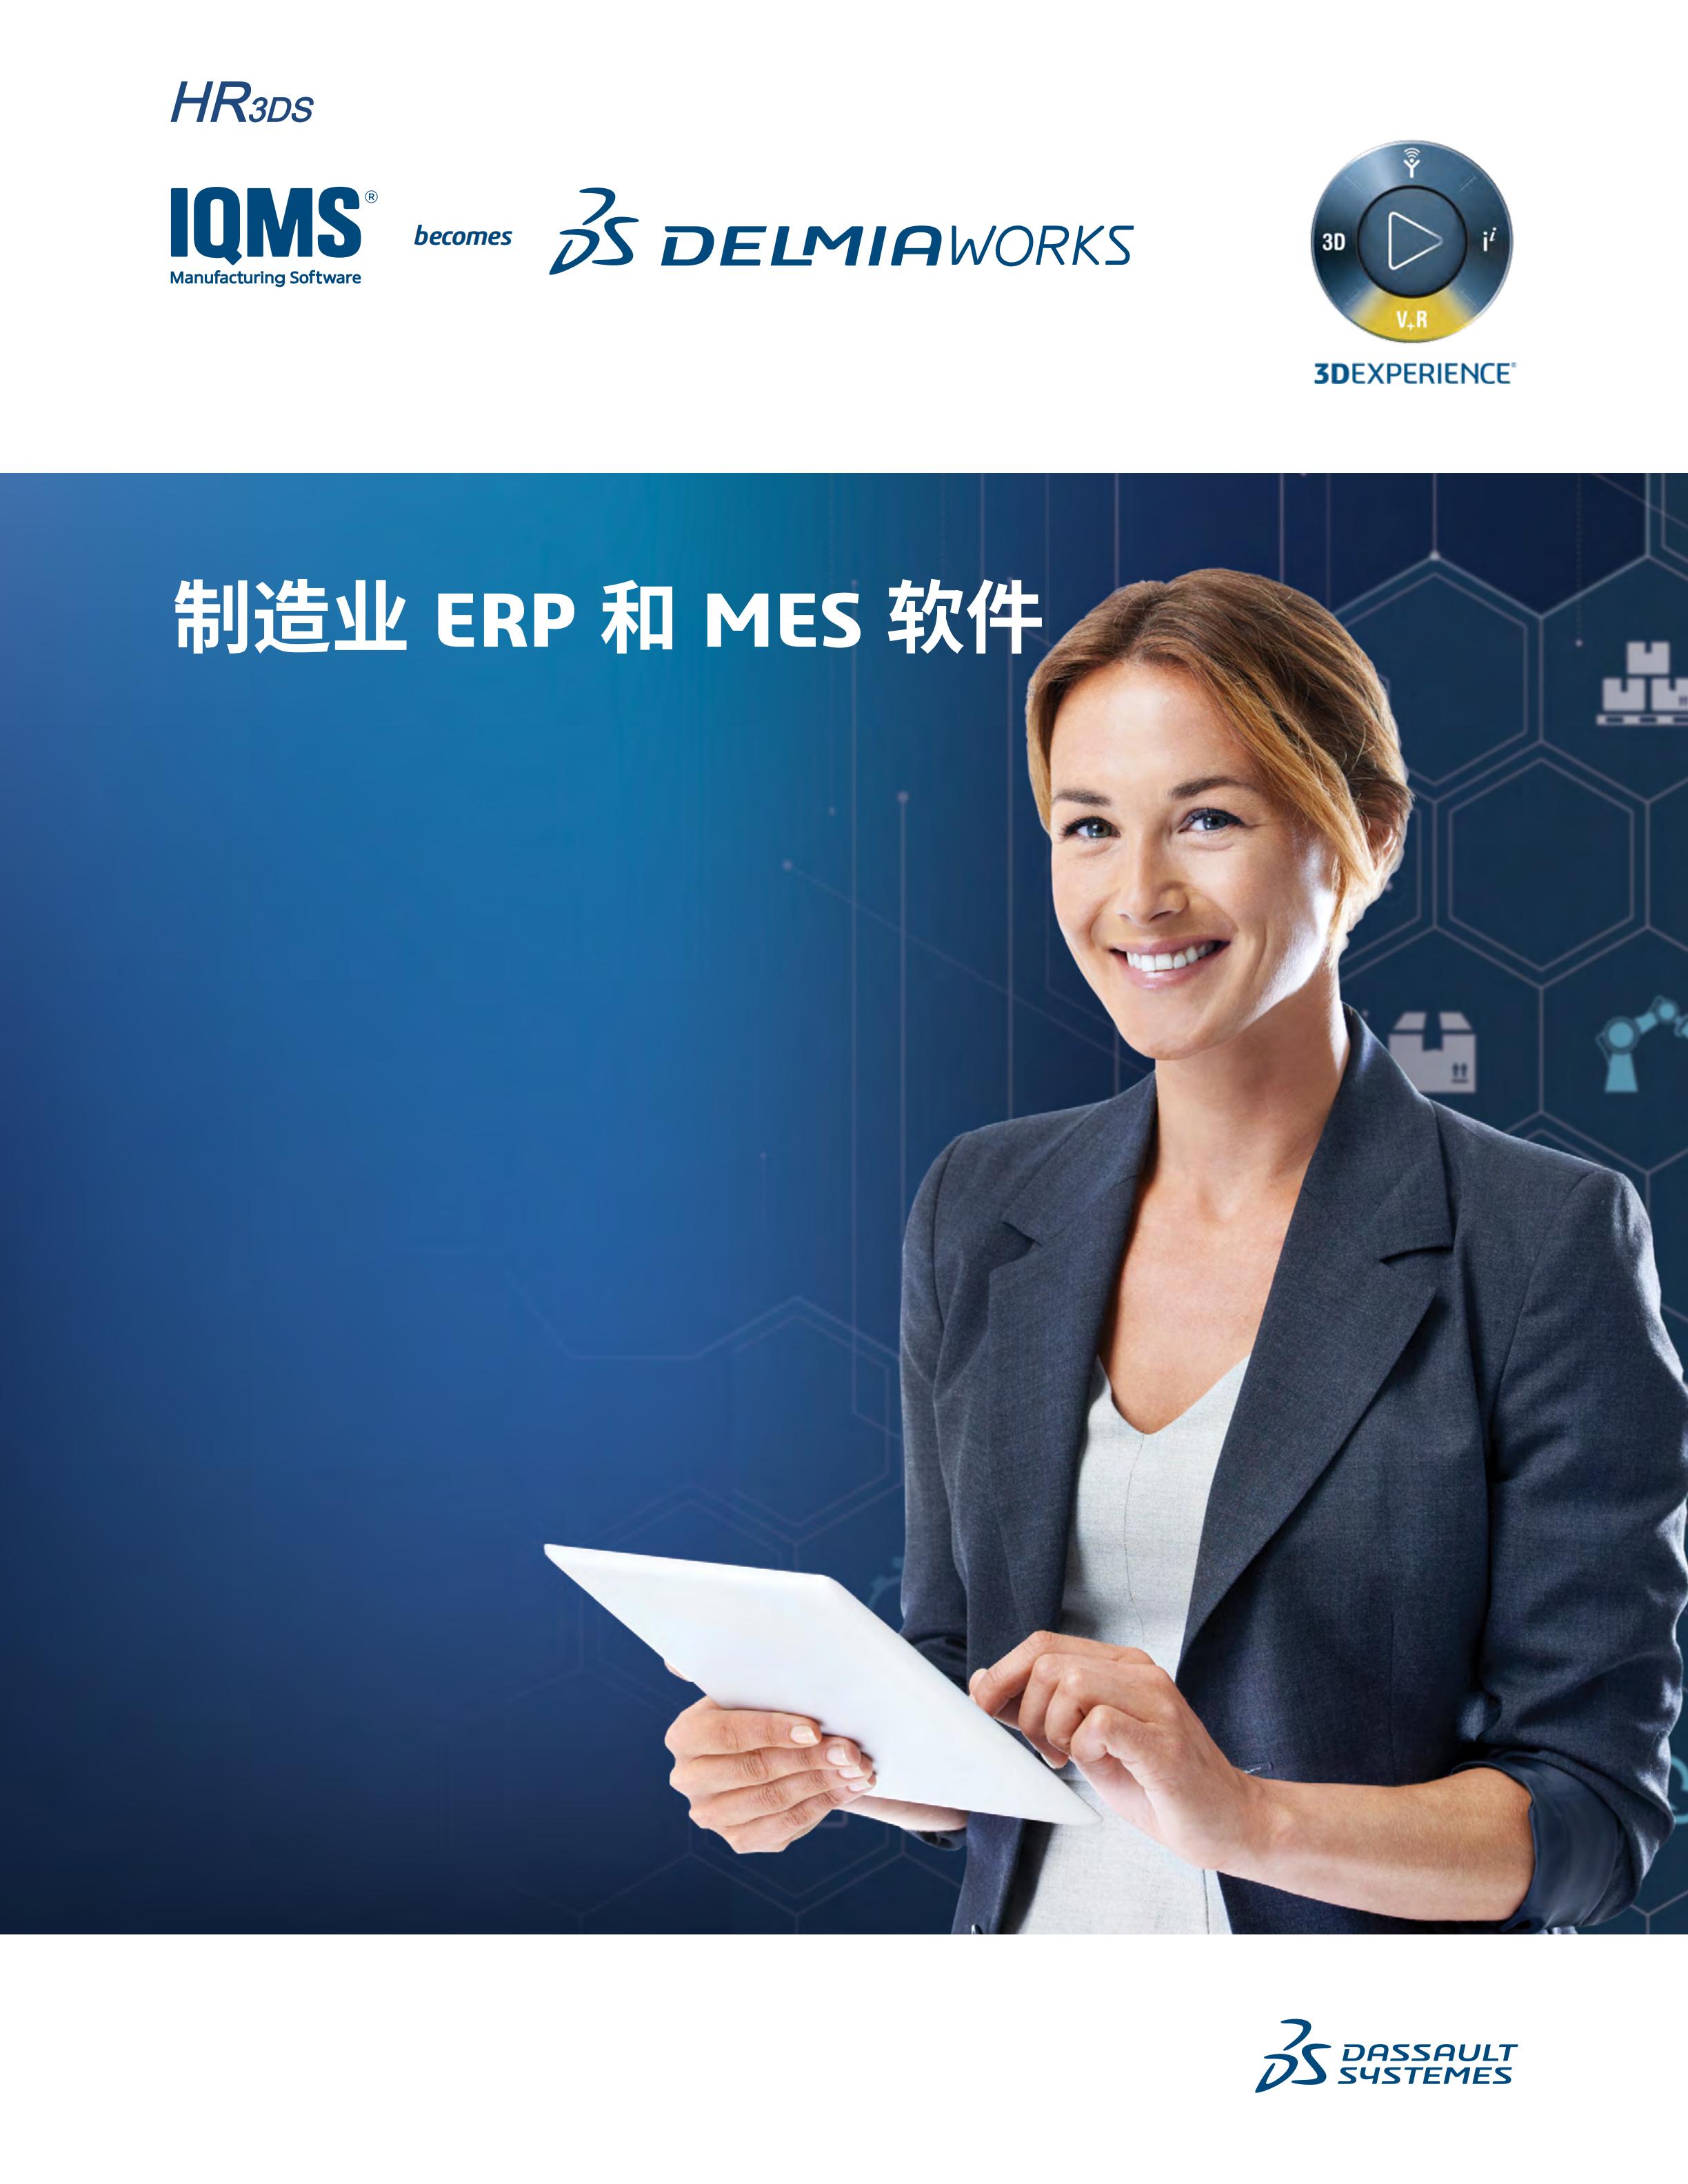 Delmiaworks面向制造业的 ERP 和 MES 软件 - 副本_00.jpg